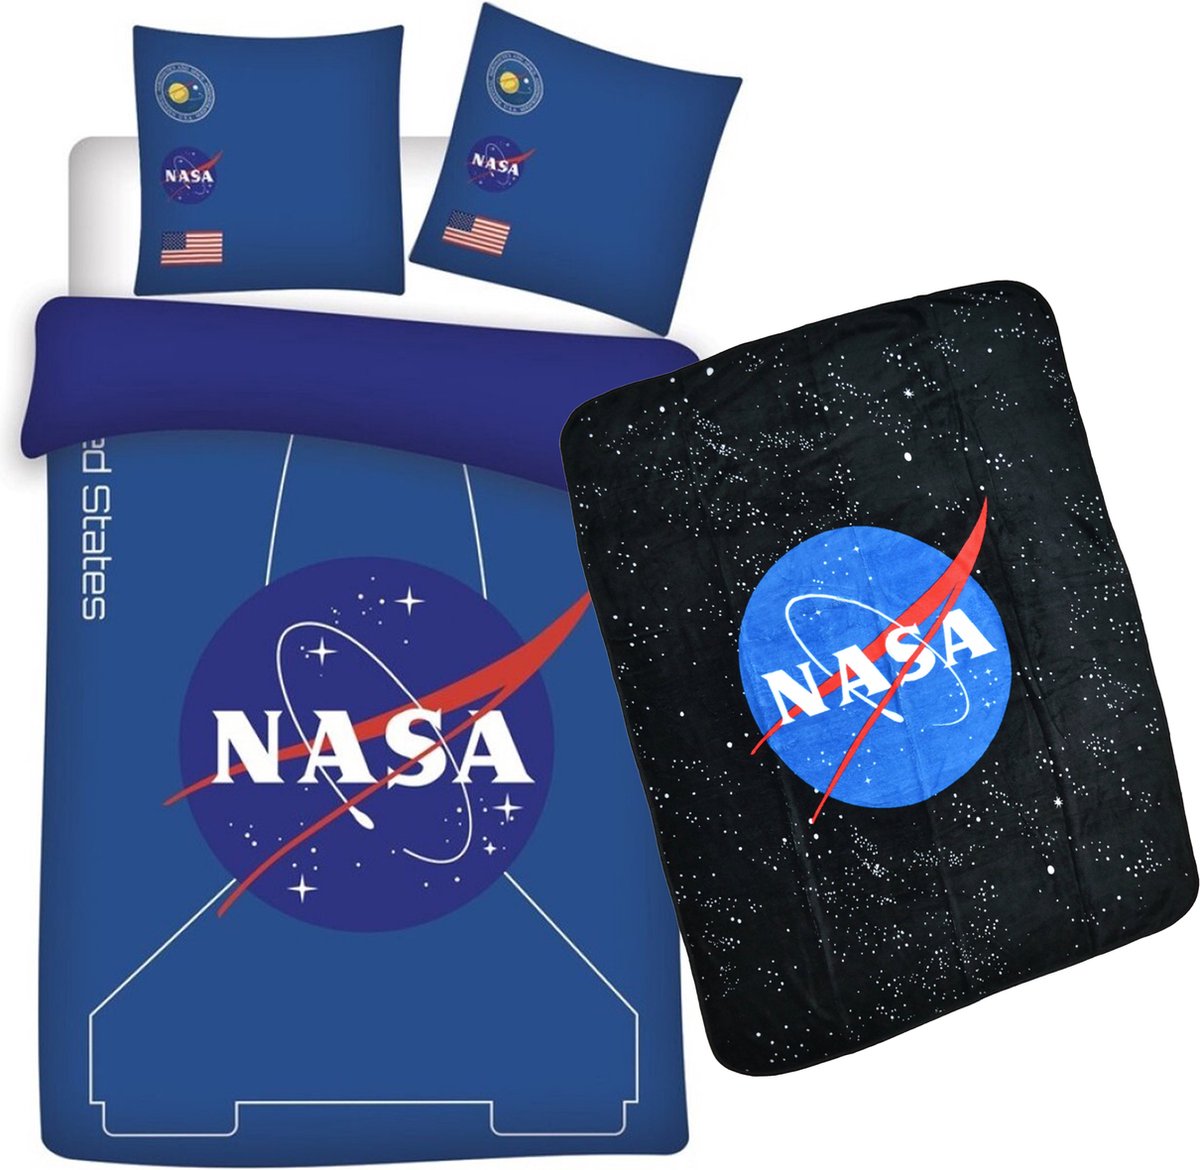 Dekbedovertrek NASA- ruimtevaart- 1persoons- 140x200cm- Polyester- incl. NASA Fleece deken 120x150cm.